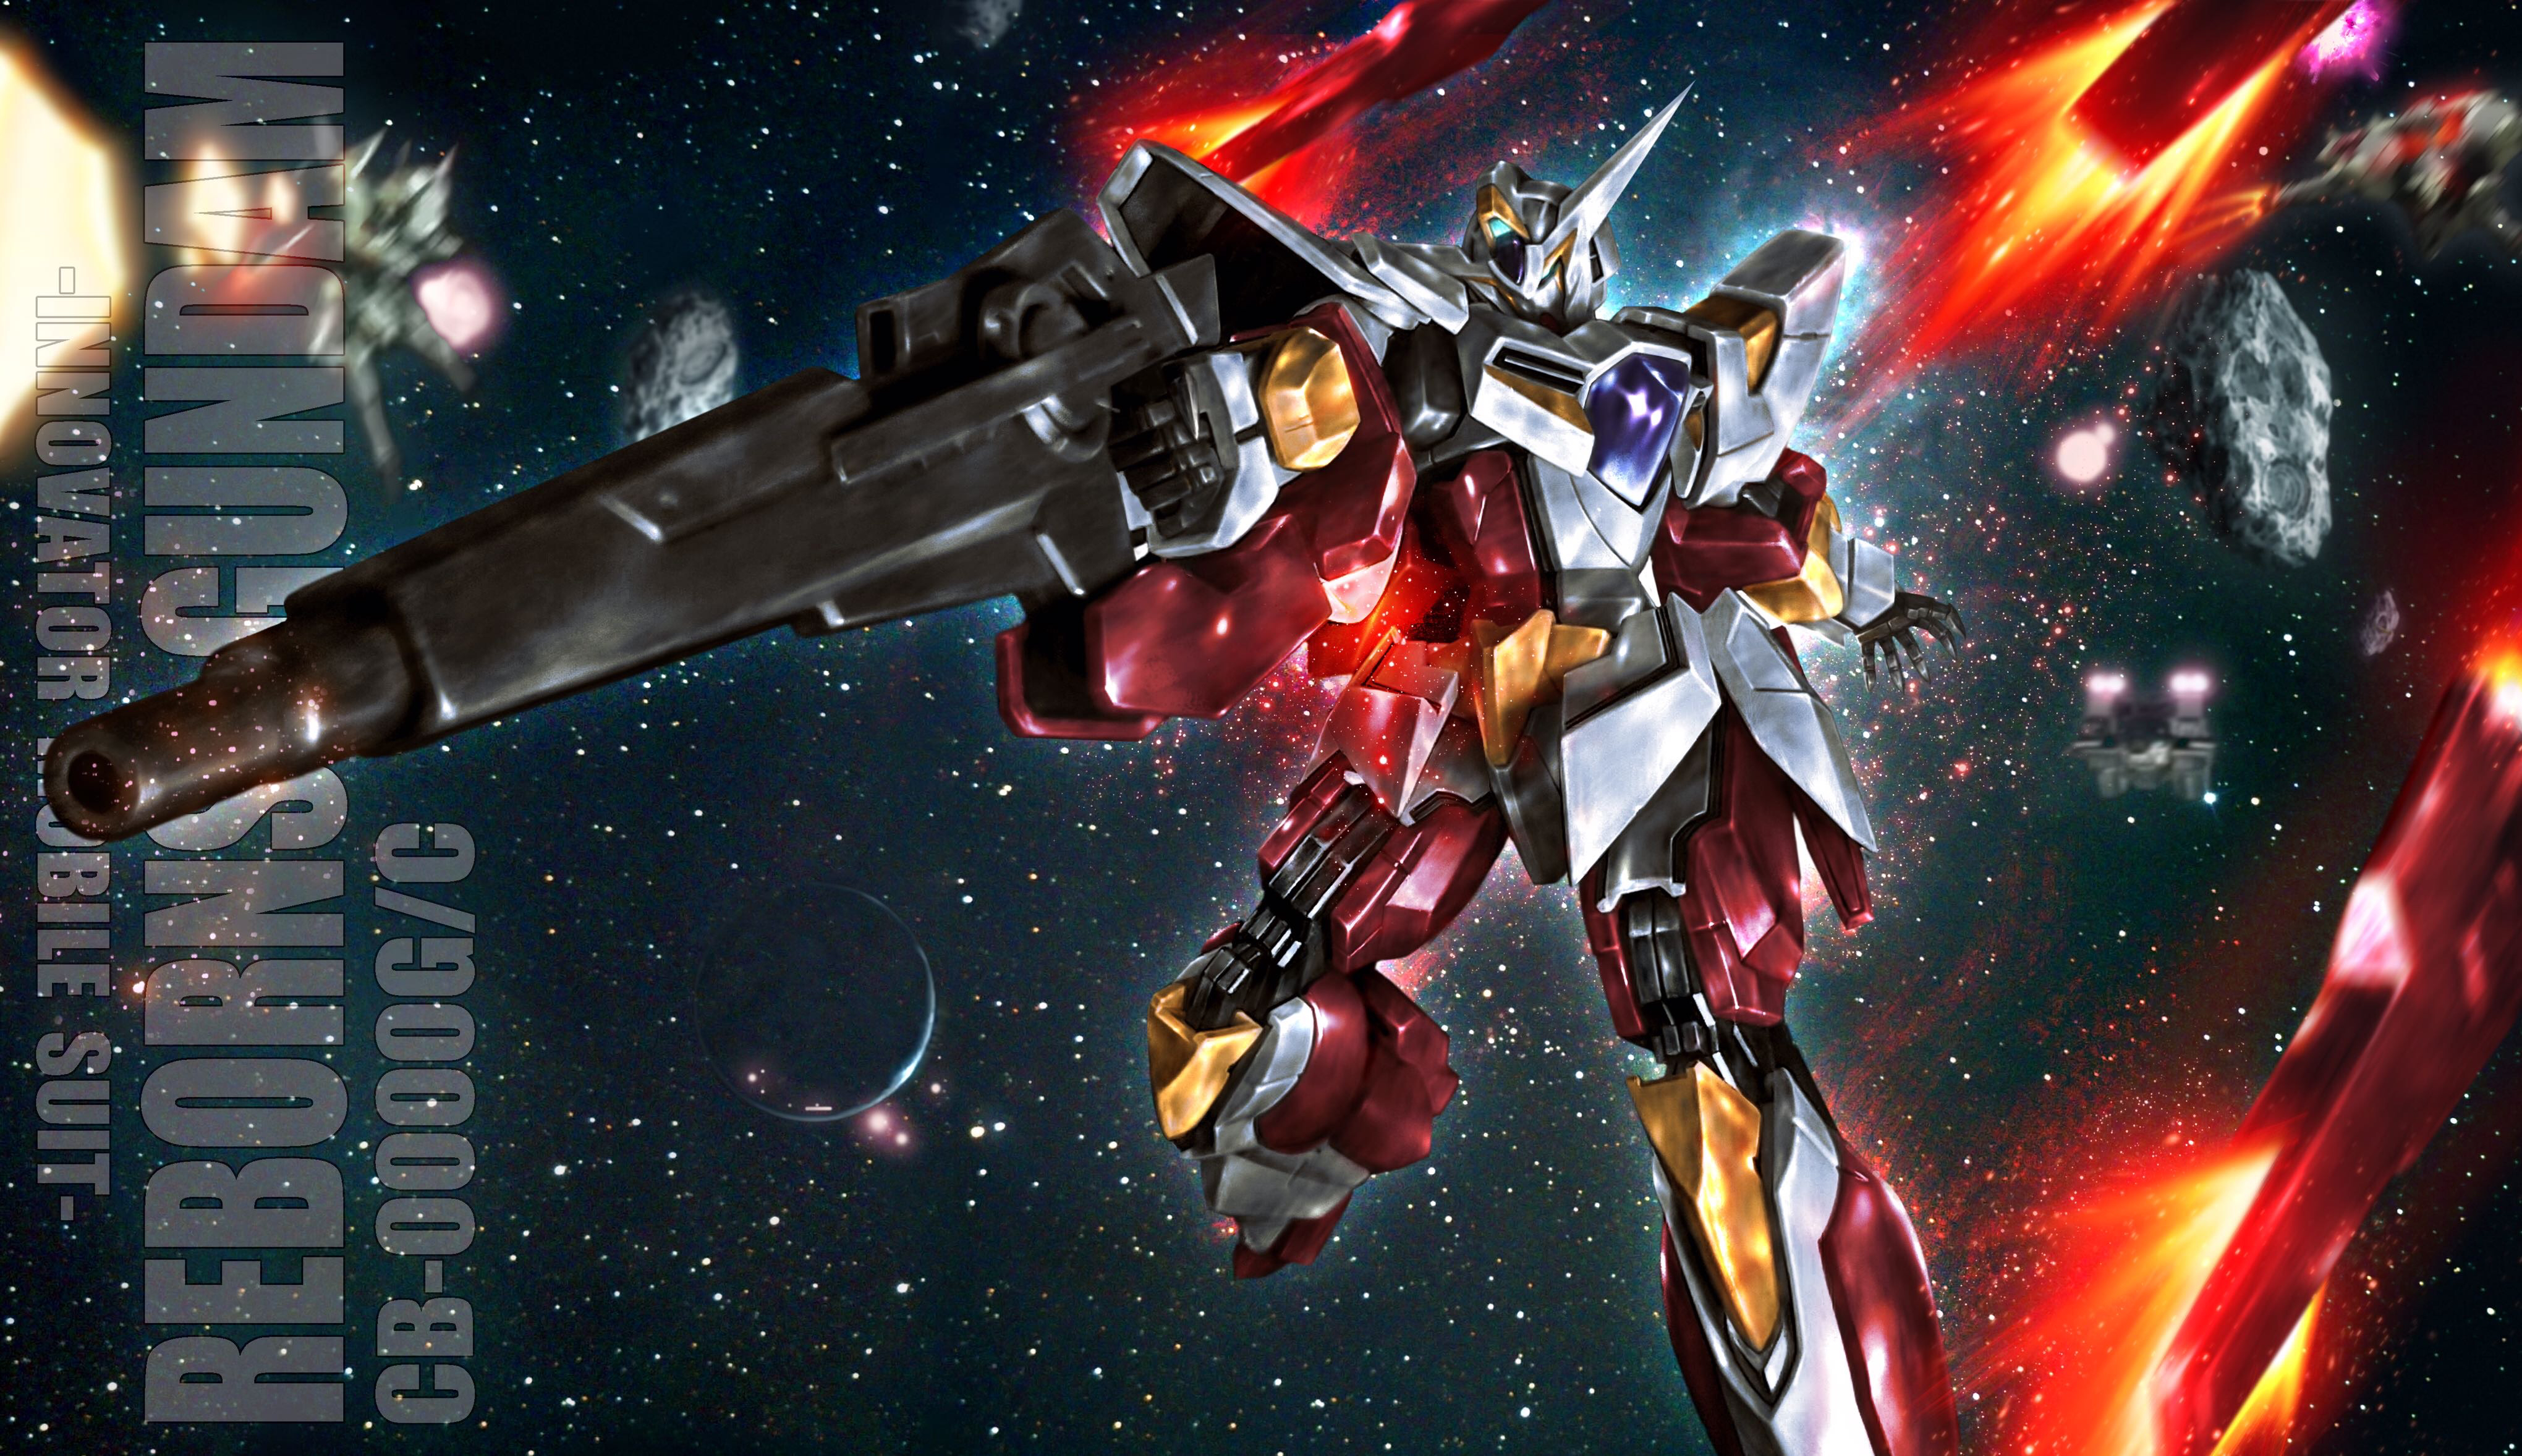 Reborns Gundam Anime Mechs Super Robot Taisen Gundam Mobile Suit Gundam 00 Artwork Digital Art Fan A 4080x2356